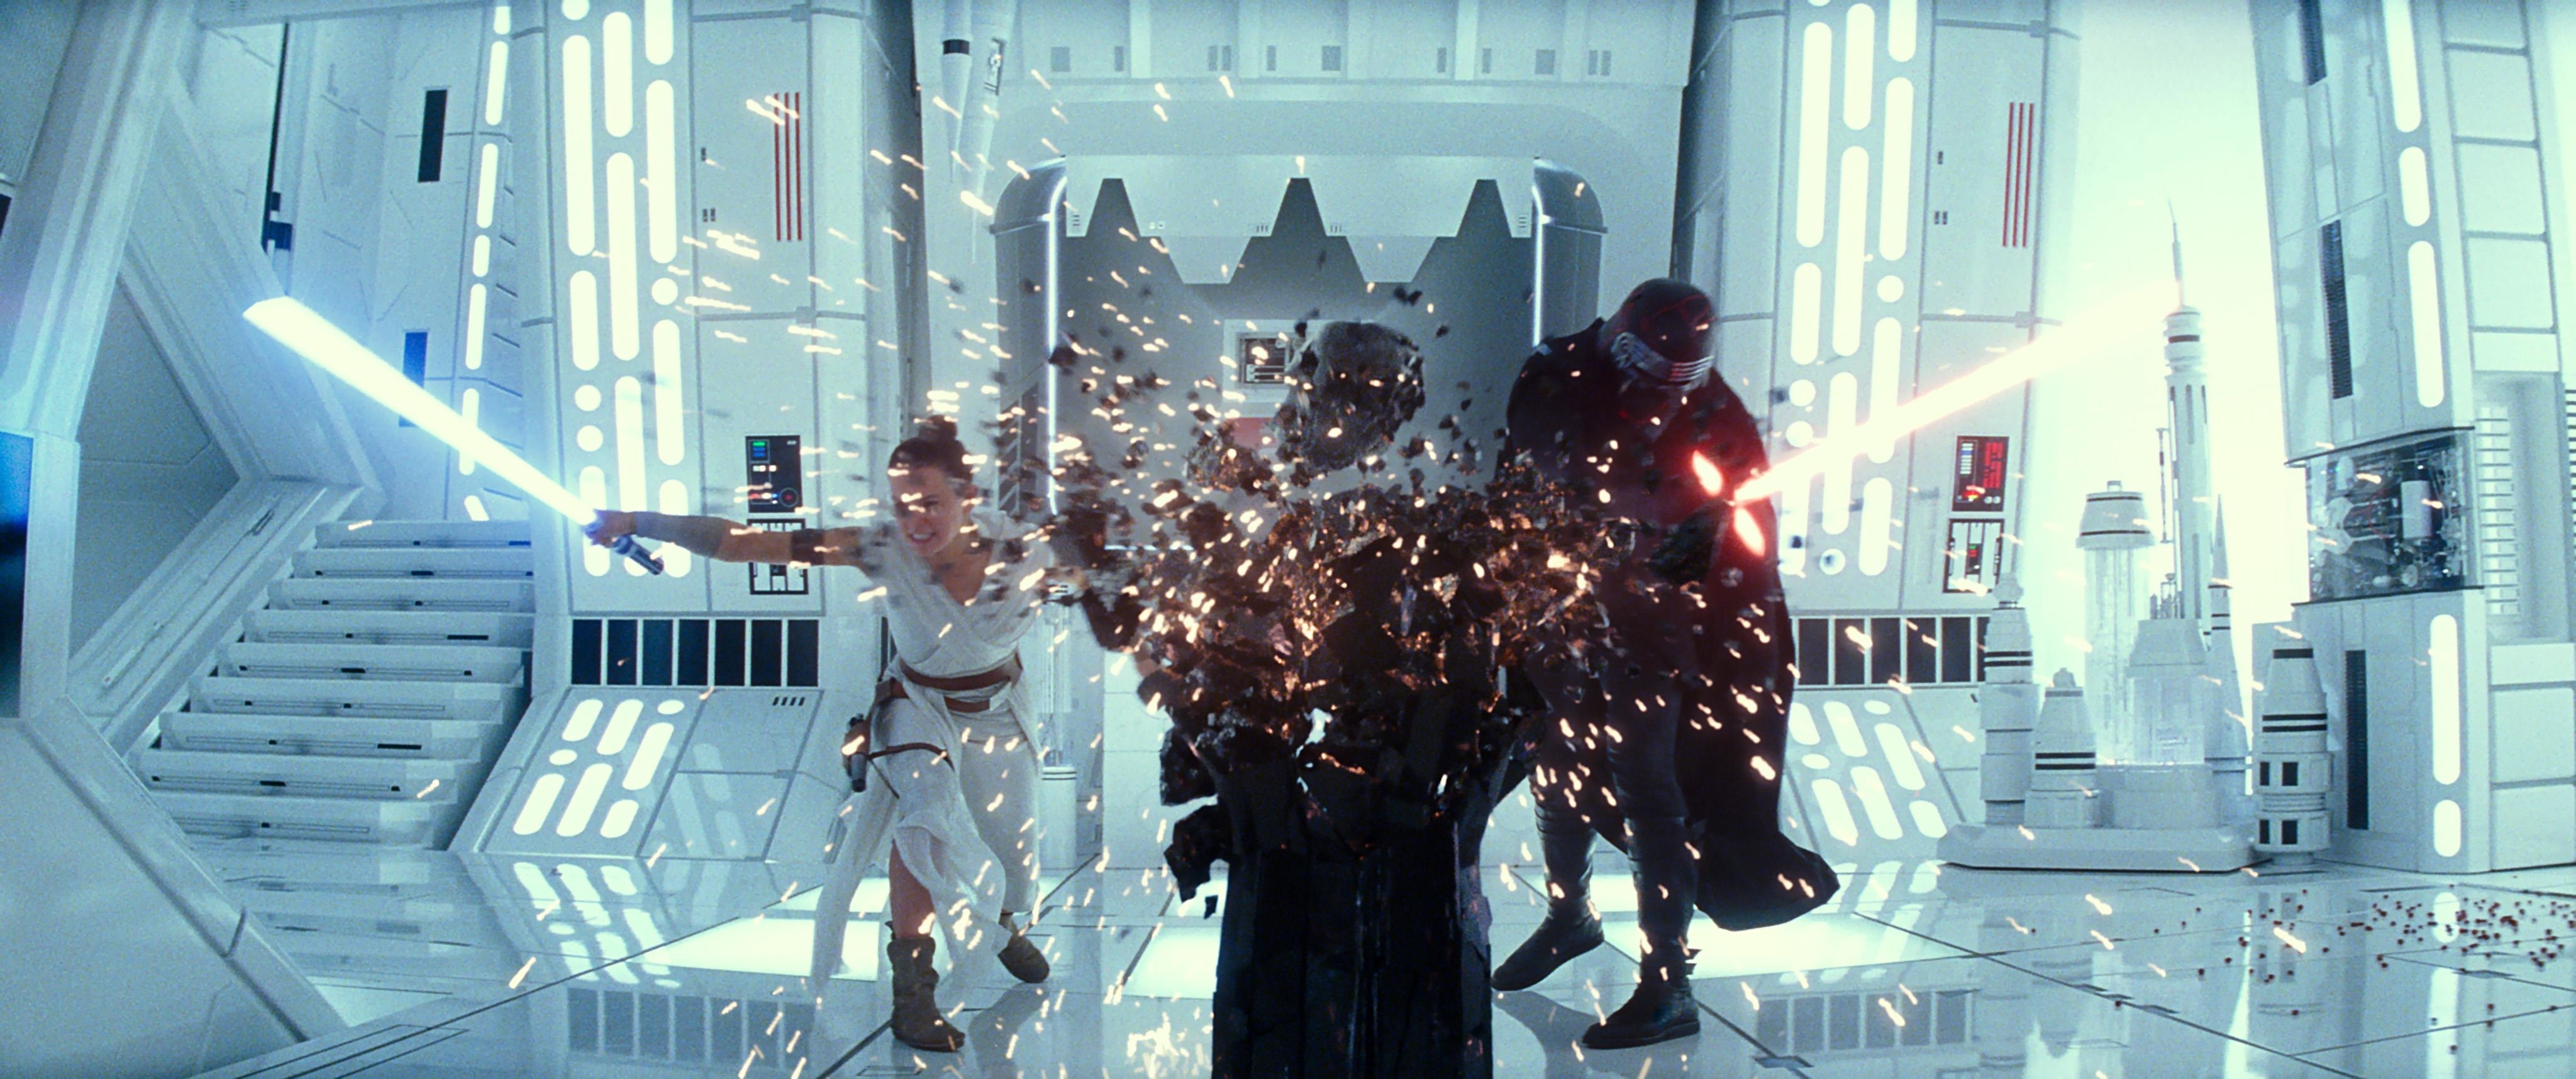 Image du film Star Wars Episode IX : l'ascension de Skywalker 8eecf9eb-7360-4f7b-9244-861087508176